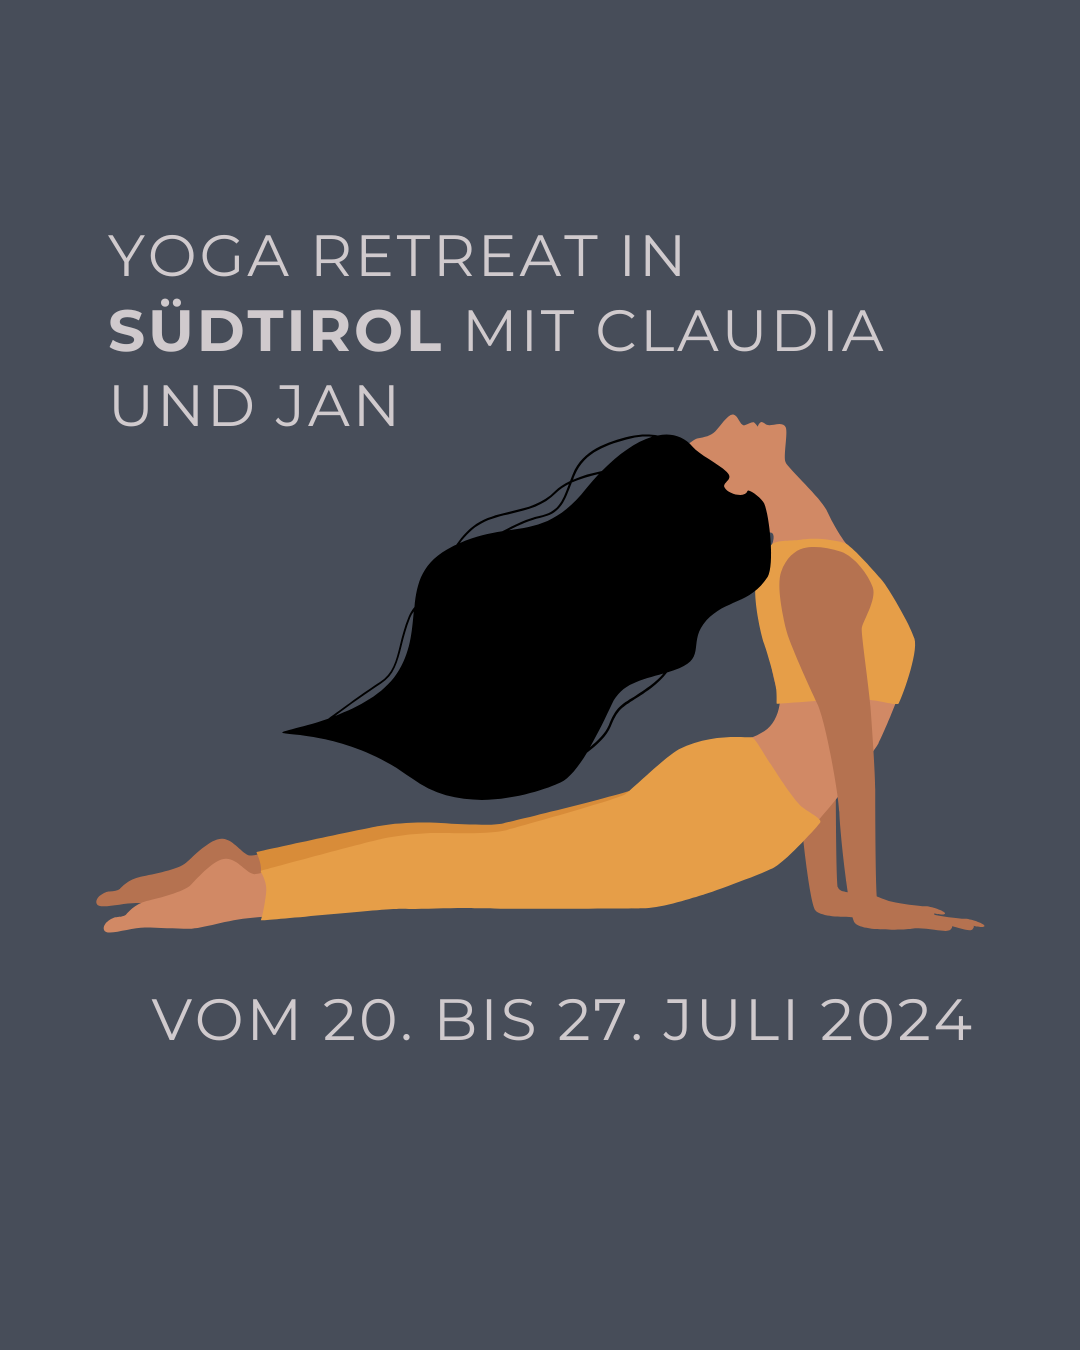 Yin Yoga Retreat 2024 – Hotel Tirolensis, Südtirol